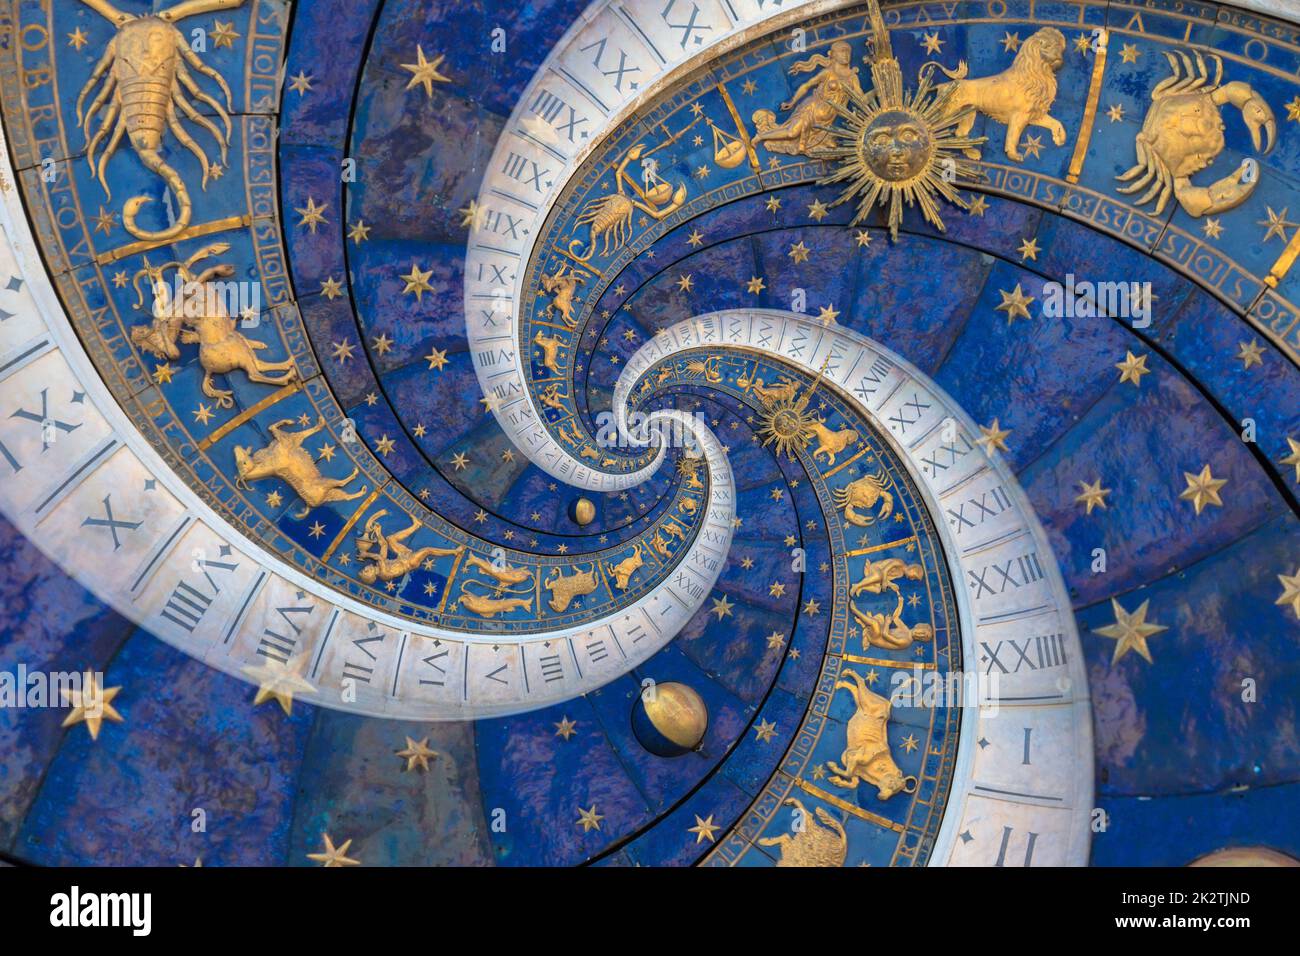 Abstrakter alter konzeptueller Hintergrund zu Mystik, Astrologie, Fantasie Stockfoto